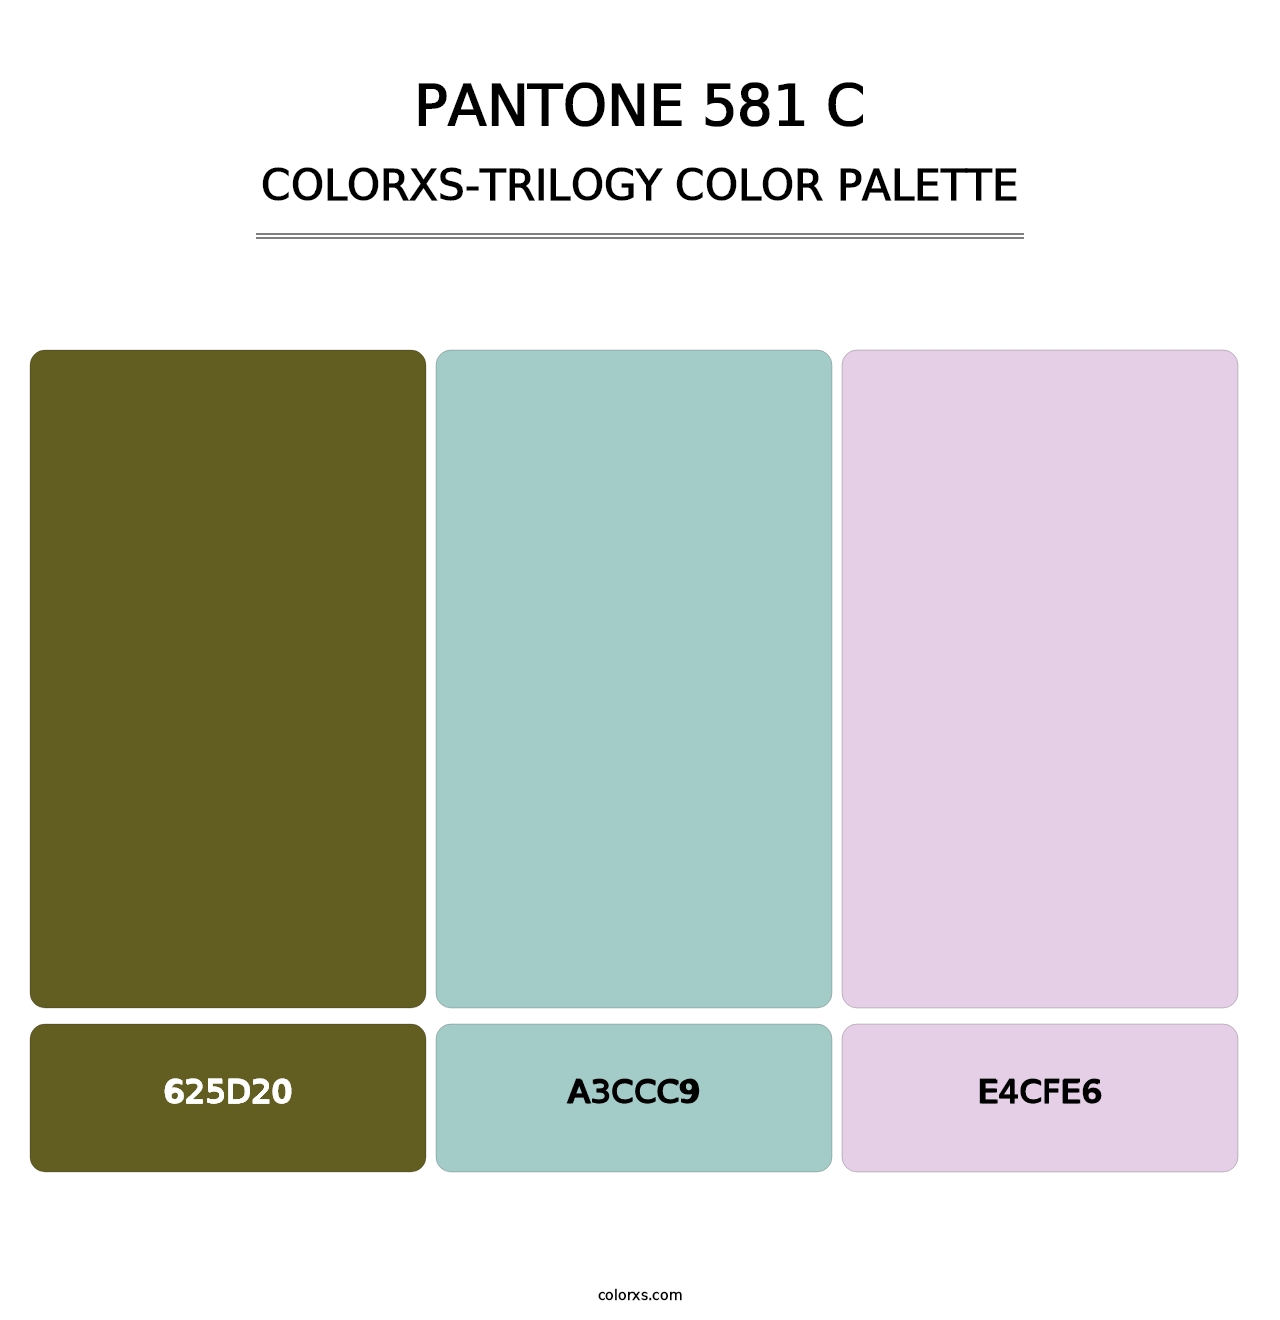 PANTONE 581 C - Colorxs Trilogy Palette